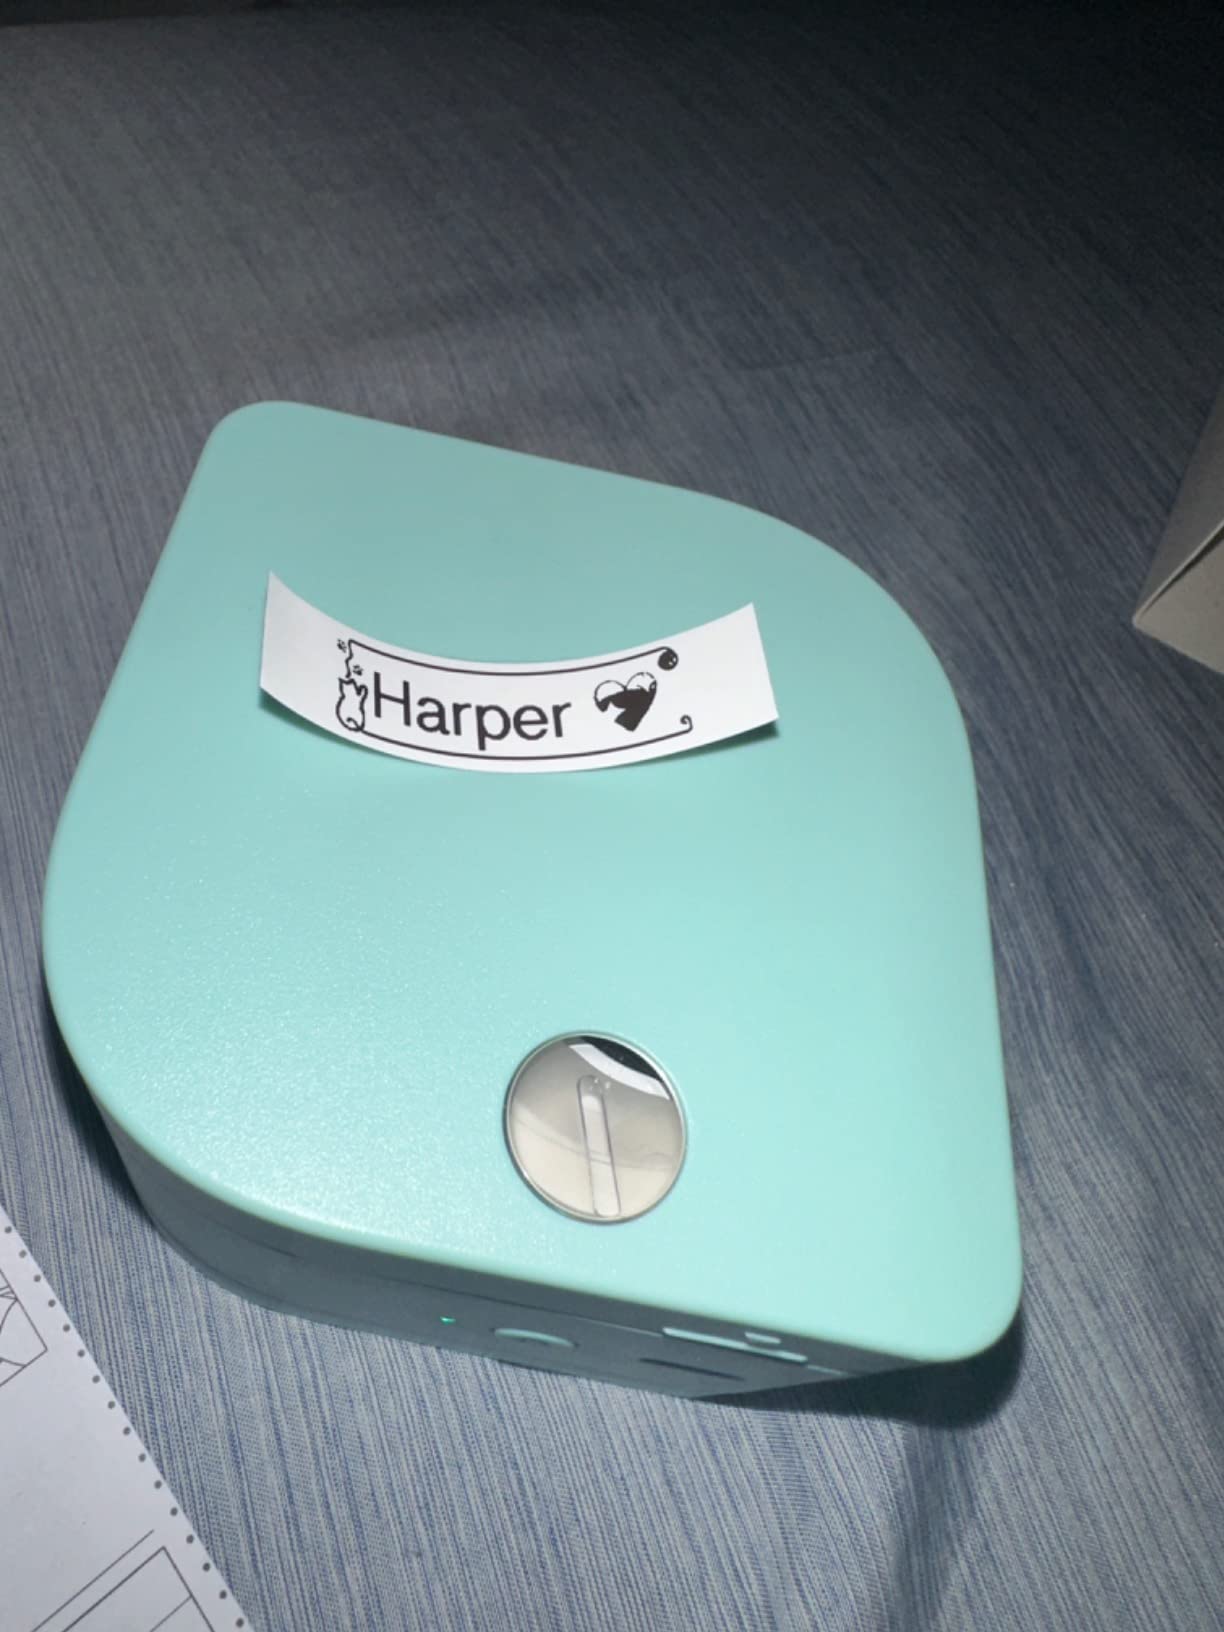 Phomemo P12 - Mini etichettatrice Bluetooth con 3 rotoli di etichette di  diversi colori, dispositivo di etichettatura termica, autoadesivo, per  casa